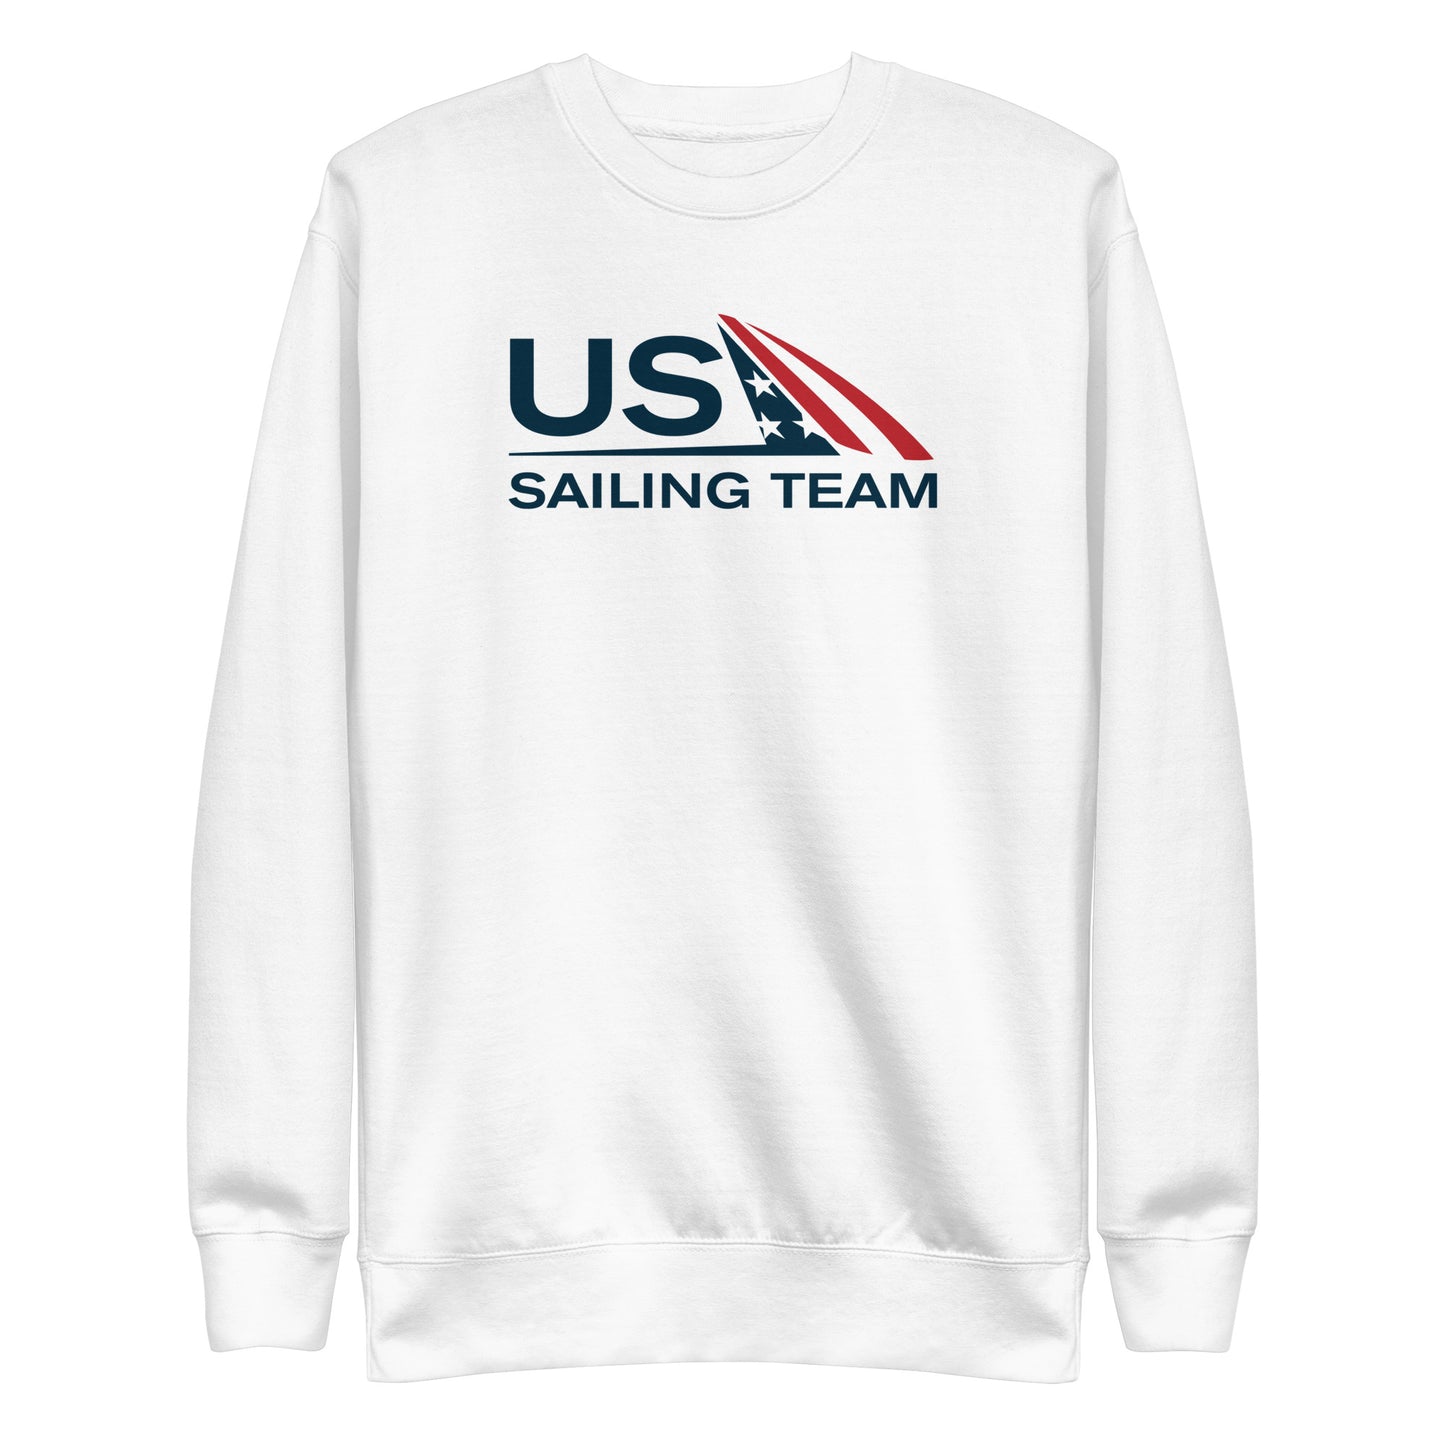 Unisex Premium Sweatshirt (US Sailing Team)